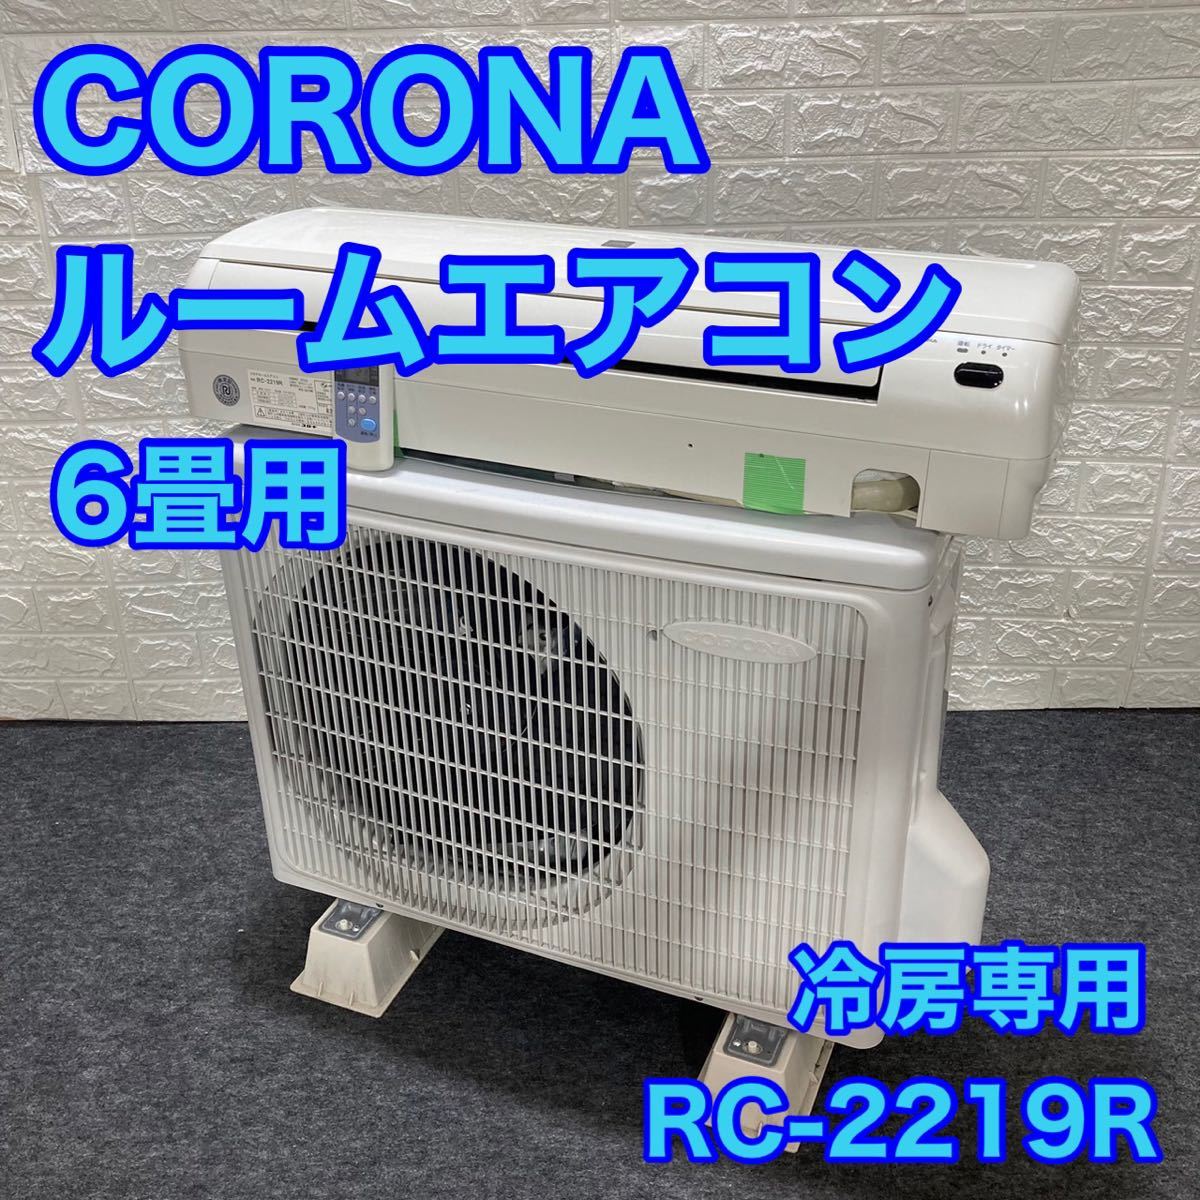 コロナ ルームエアコン 冷房専用 RC-2219R 6畳用 2019年製 家電 d1104 コロナルームエアコン CORONA ルームエアコン